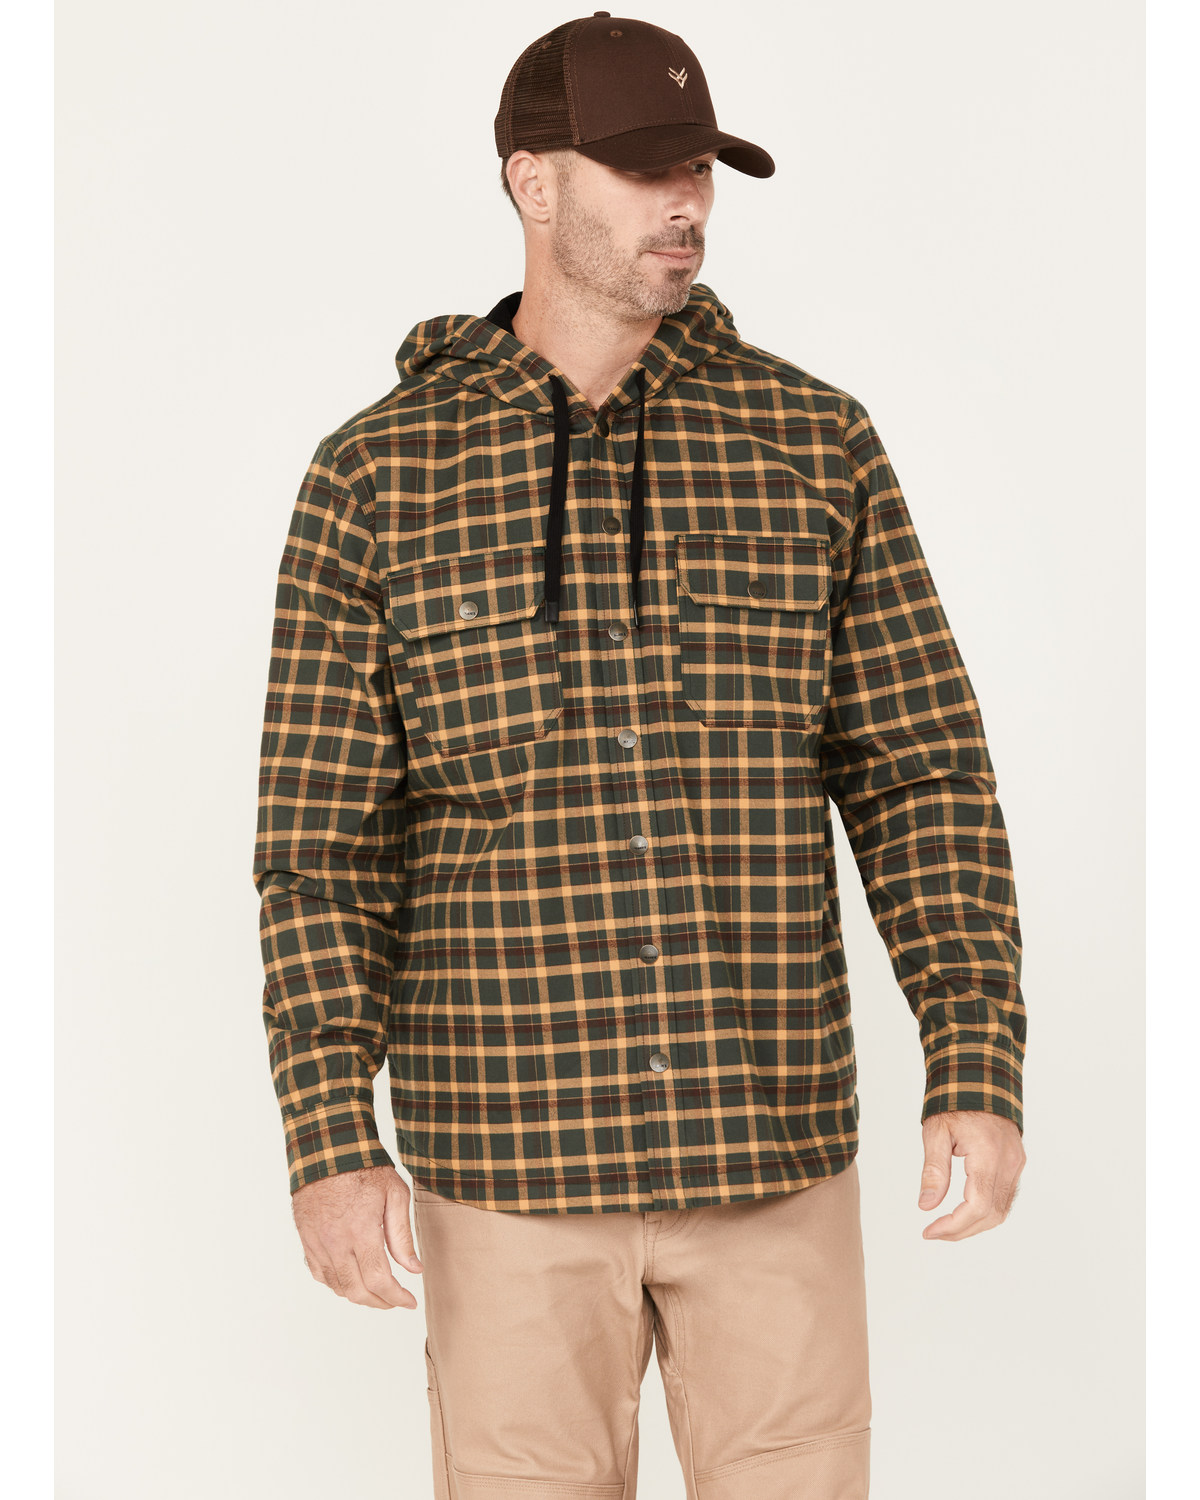 Hawx Men's Flannel Hooded Work Jacket